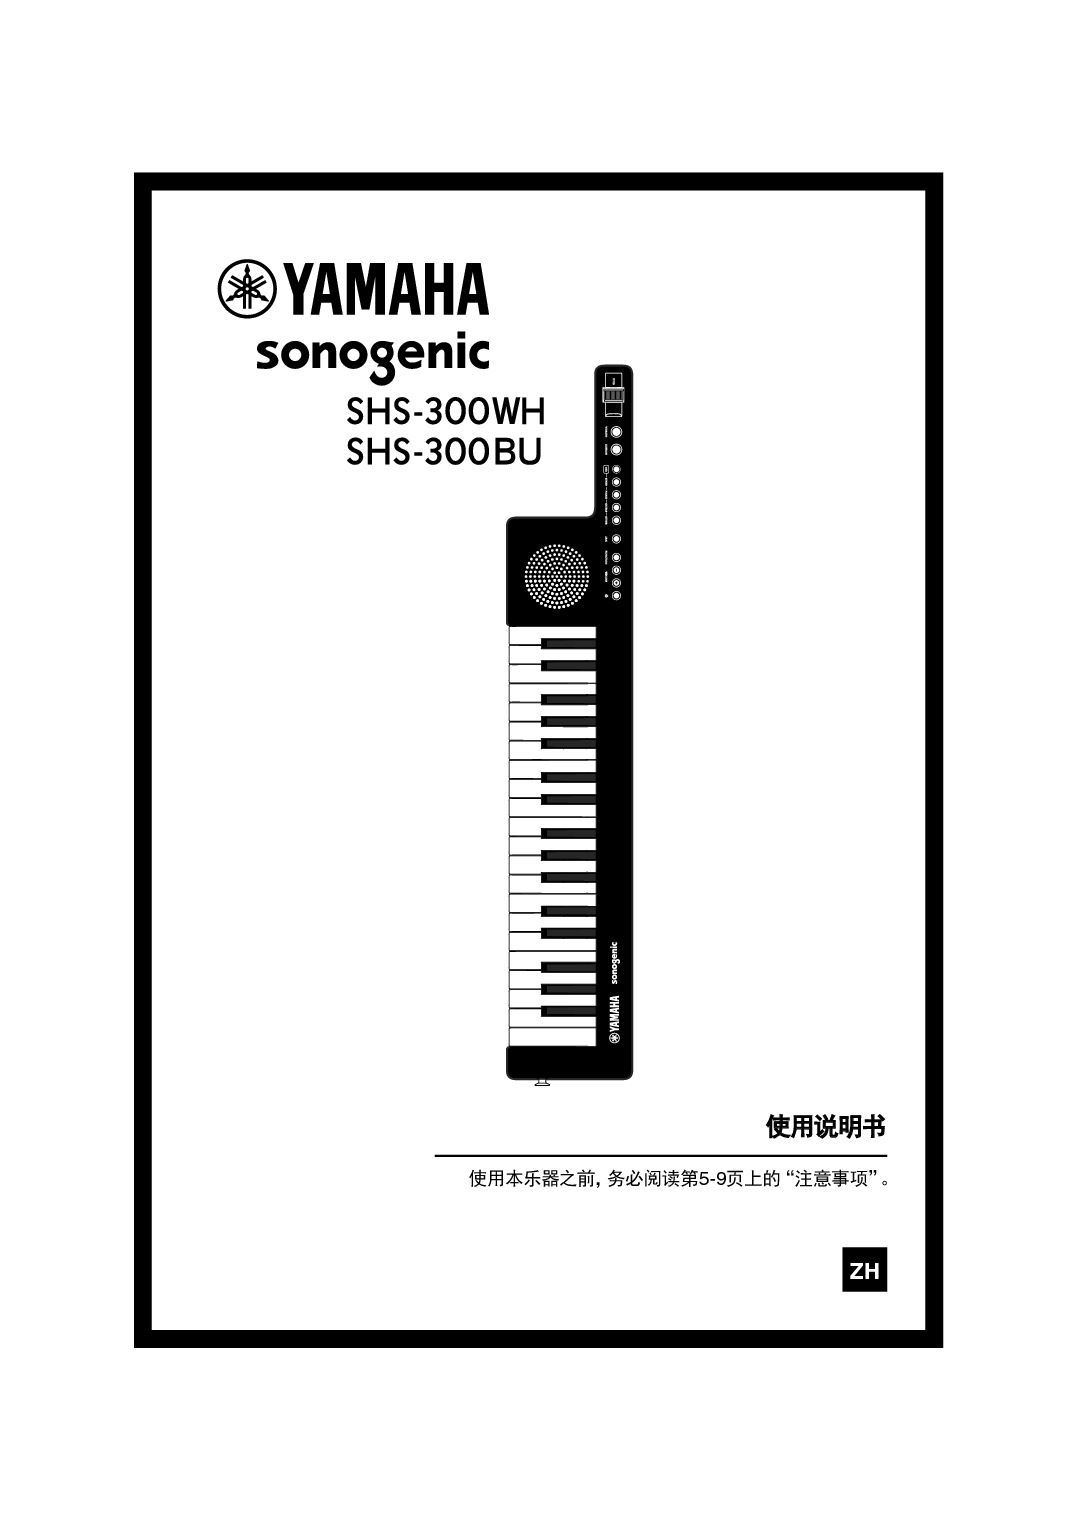 雅马哈 Yamaha SHS-300BU 使用说明书 封面